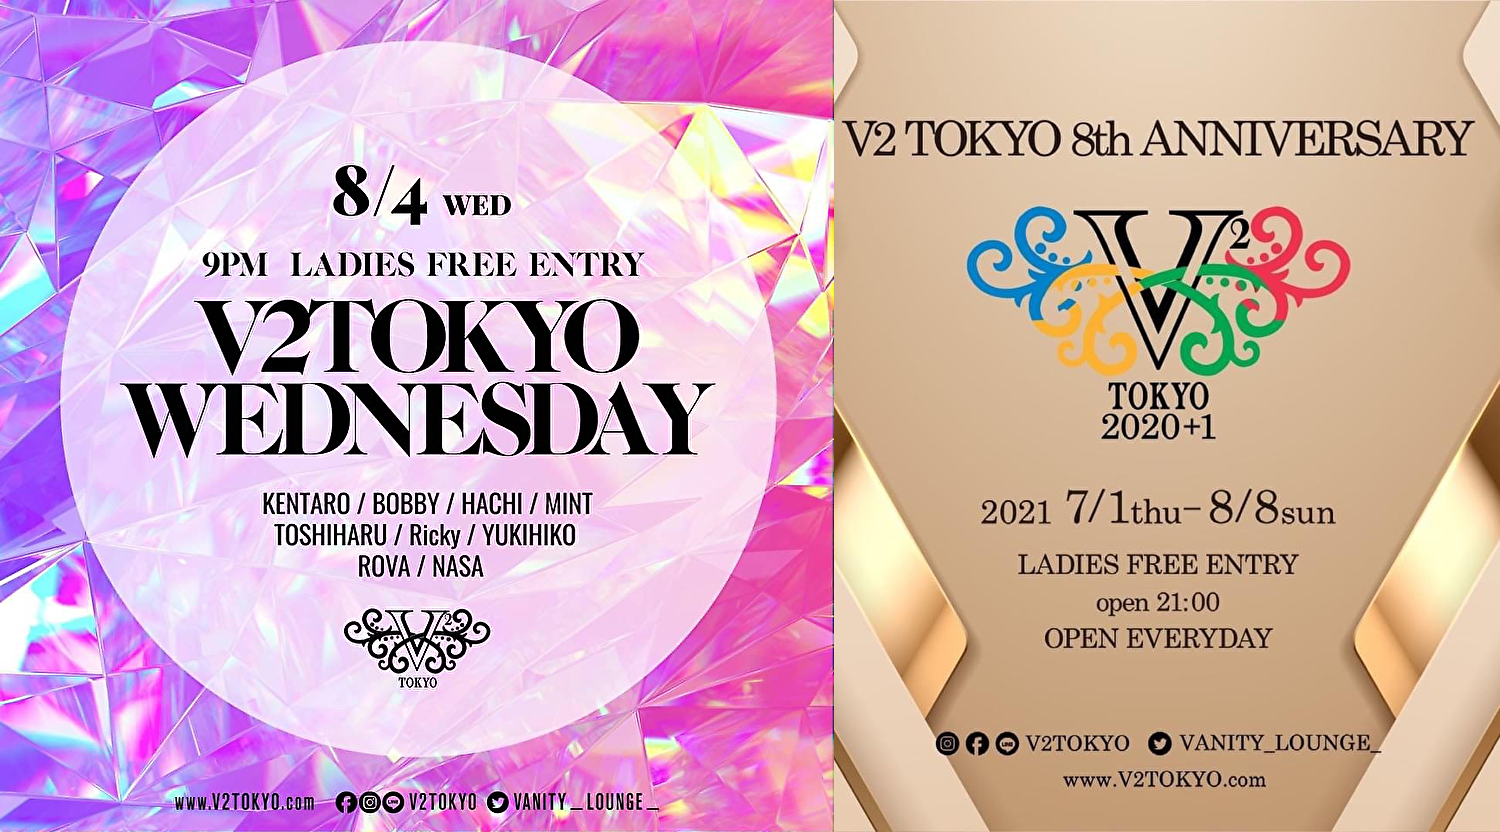 今夜8/4(水) ㊗️V2 TOKYO 8th ANNIVERSARY㊗️ - V2 TOKYO WEDNESDAY - @六本木 V2 TOKYO